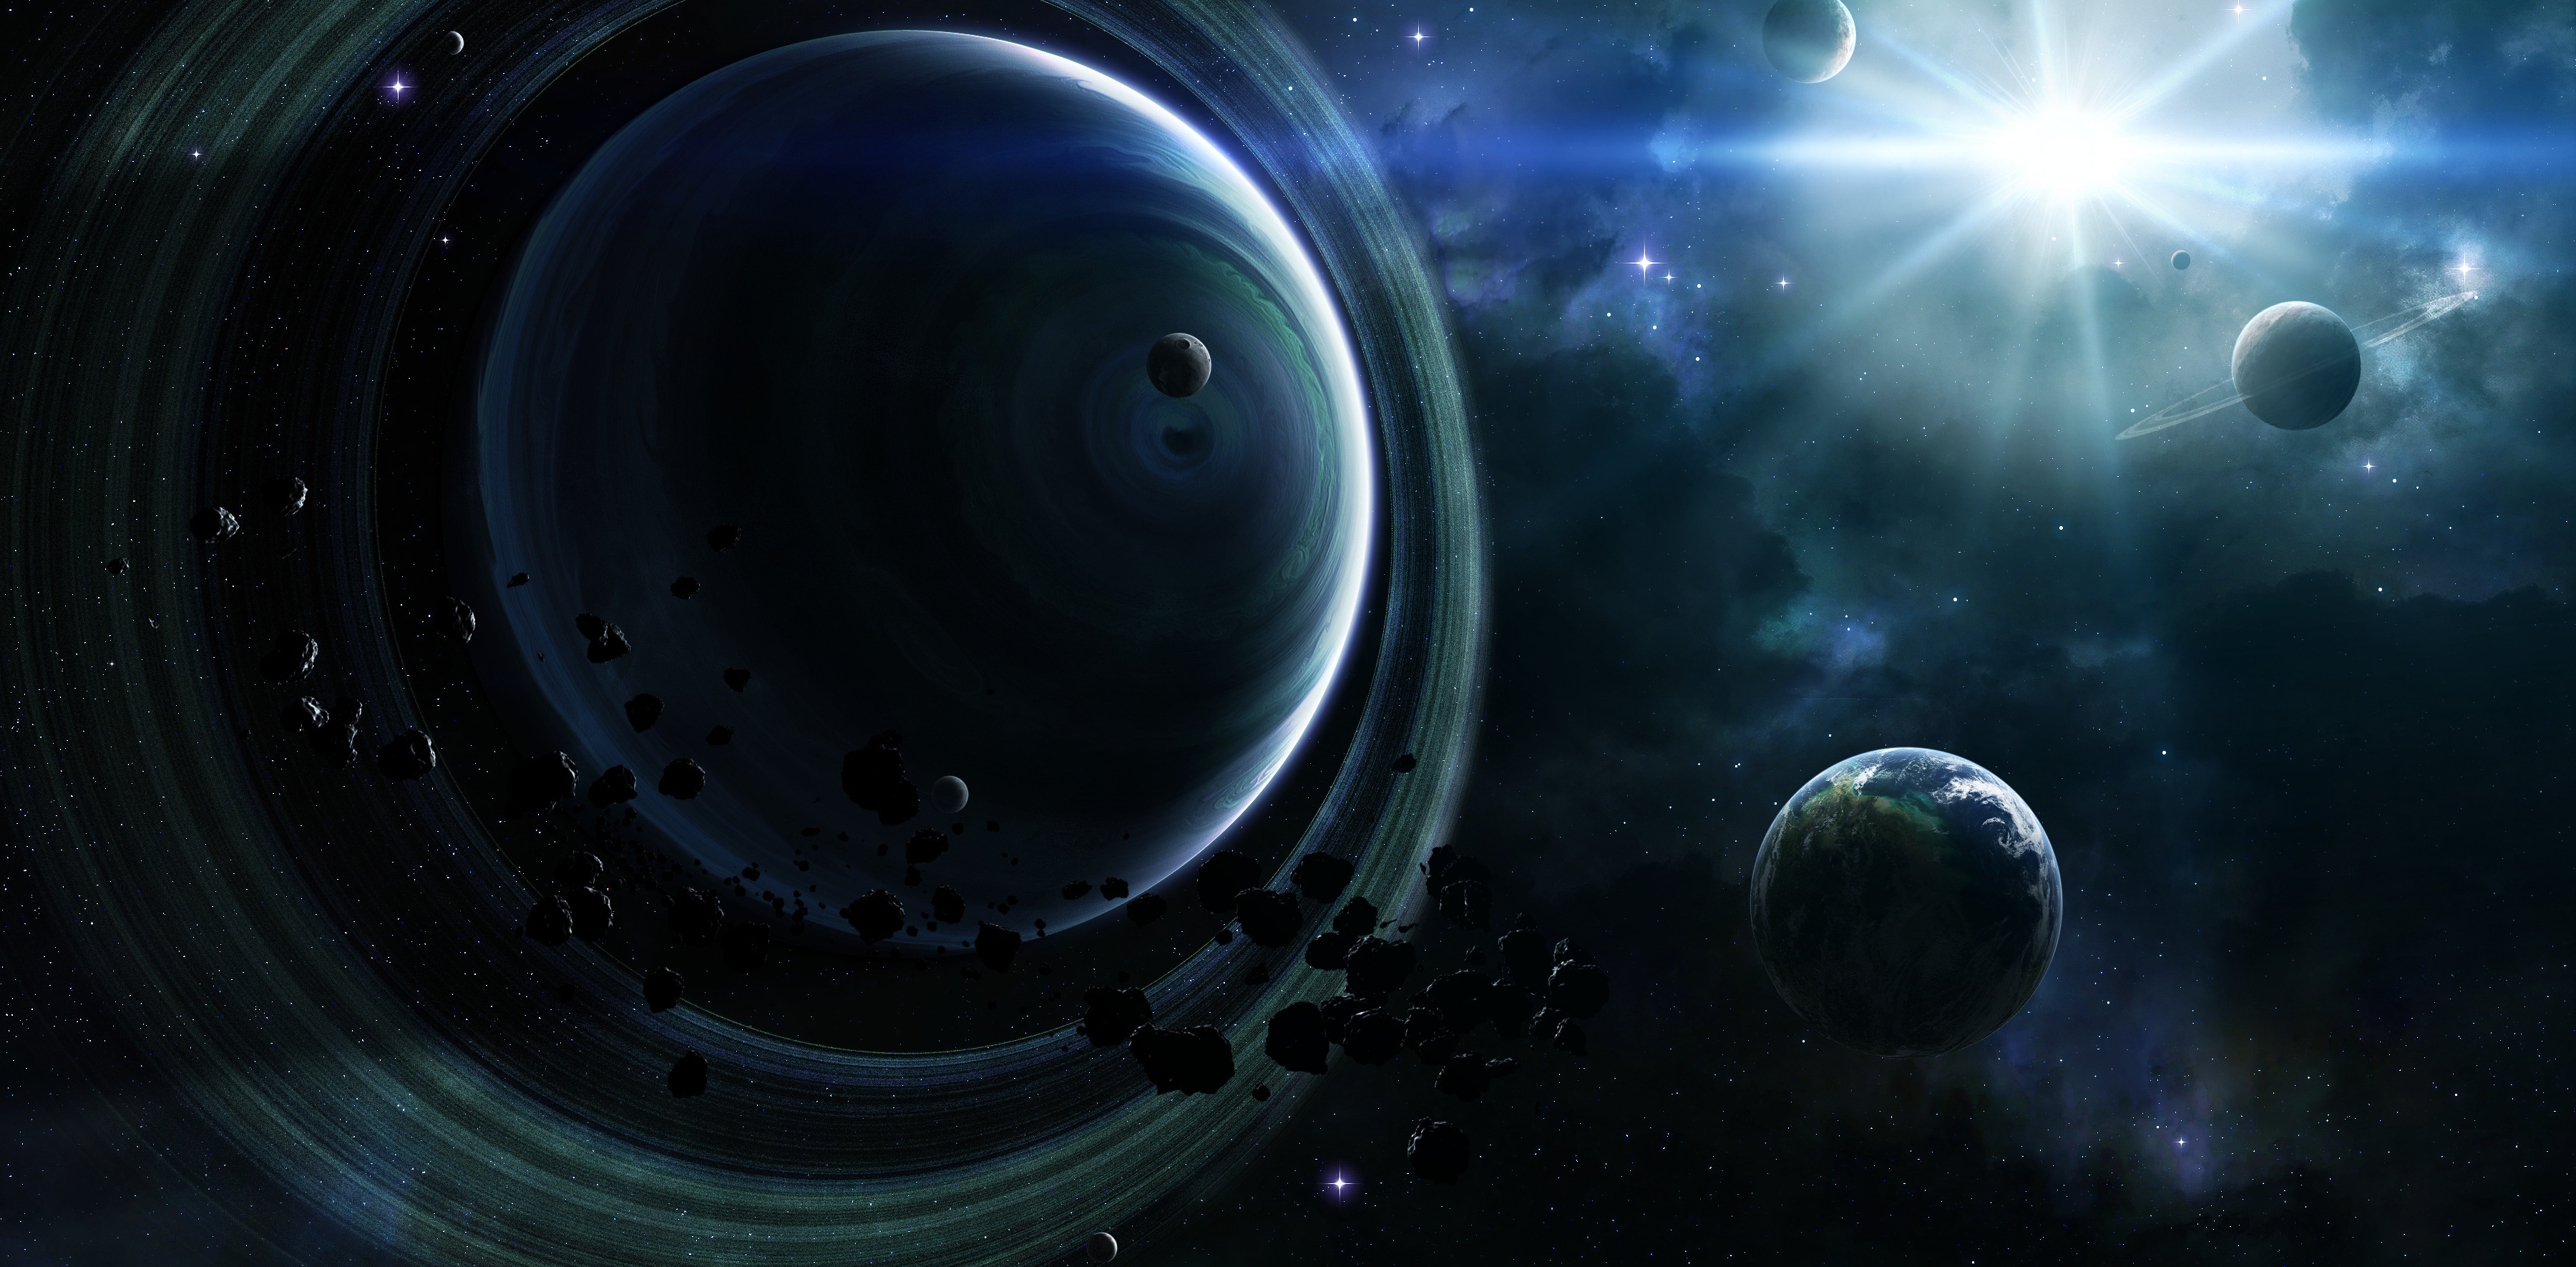 Обои Планета, кольца, космос картинки на рабочий стол на тему Космос - скачать загрузить